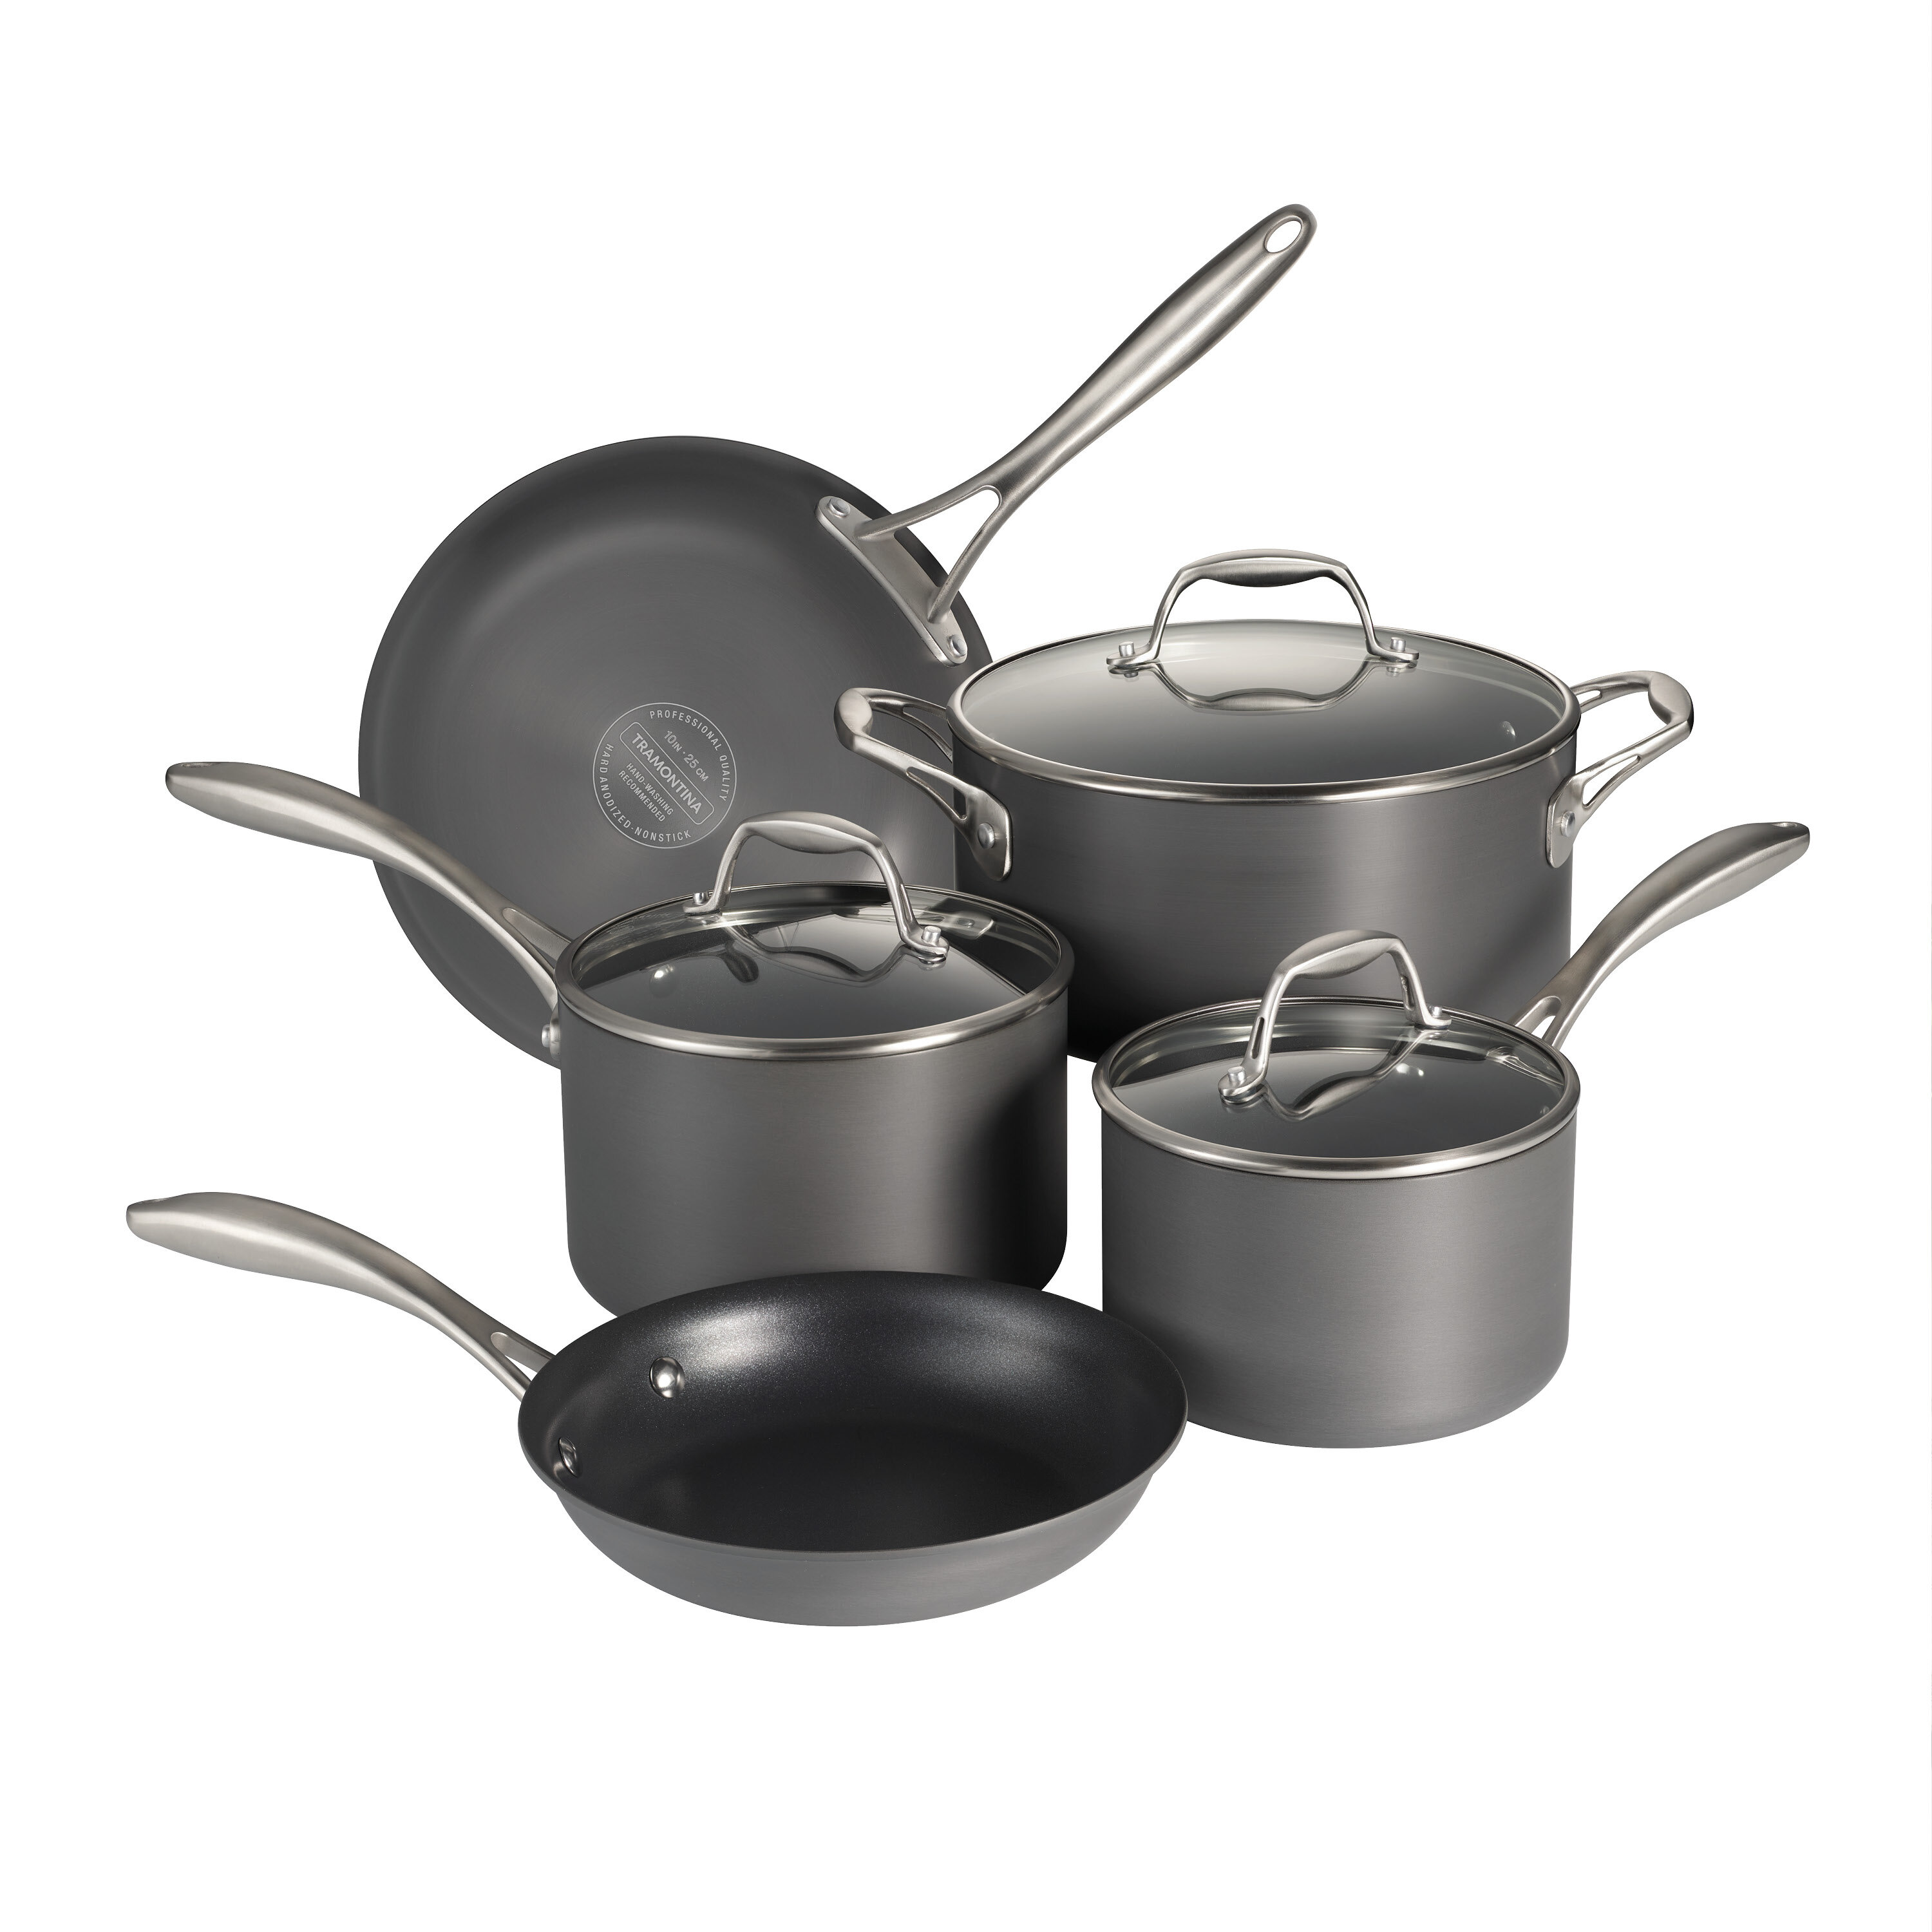 https://assets.wfcdn.com/im/58532755/compr-r85/1711/171113616/tramontina-gourmet-8-pc-hard-anodized-aluminum-cookware-set.jpg